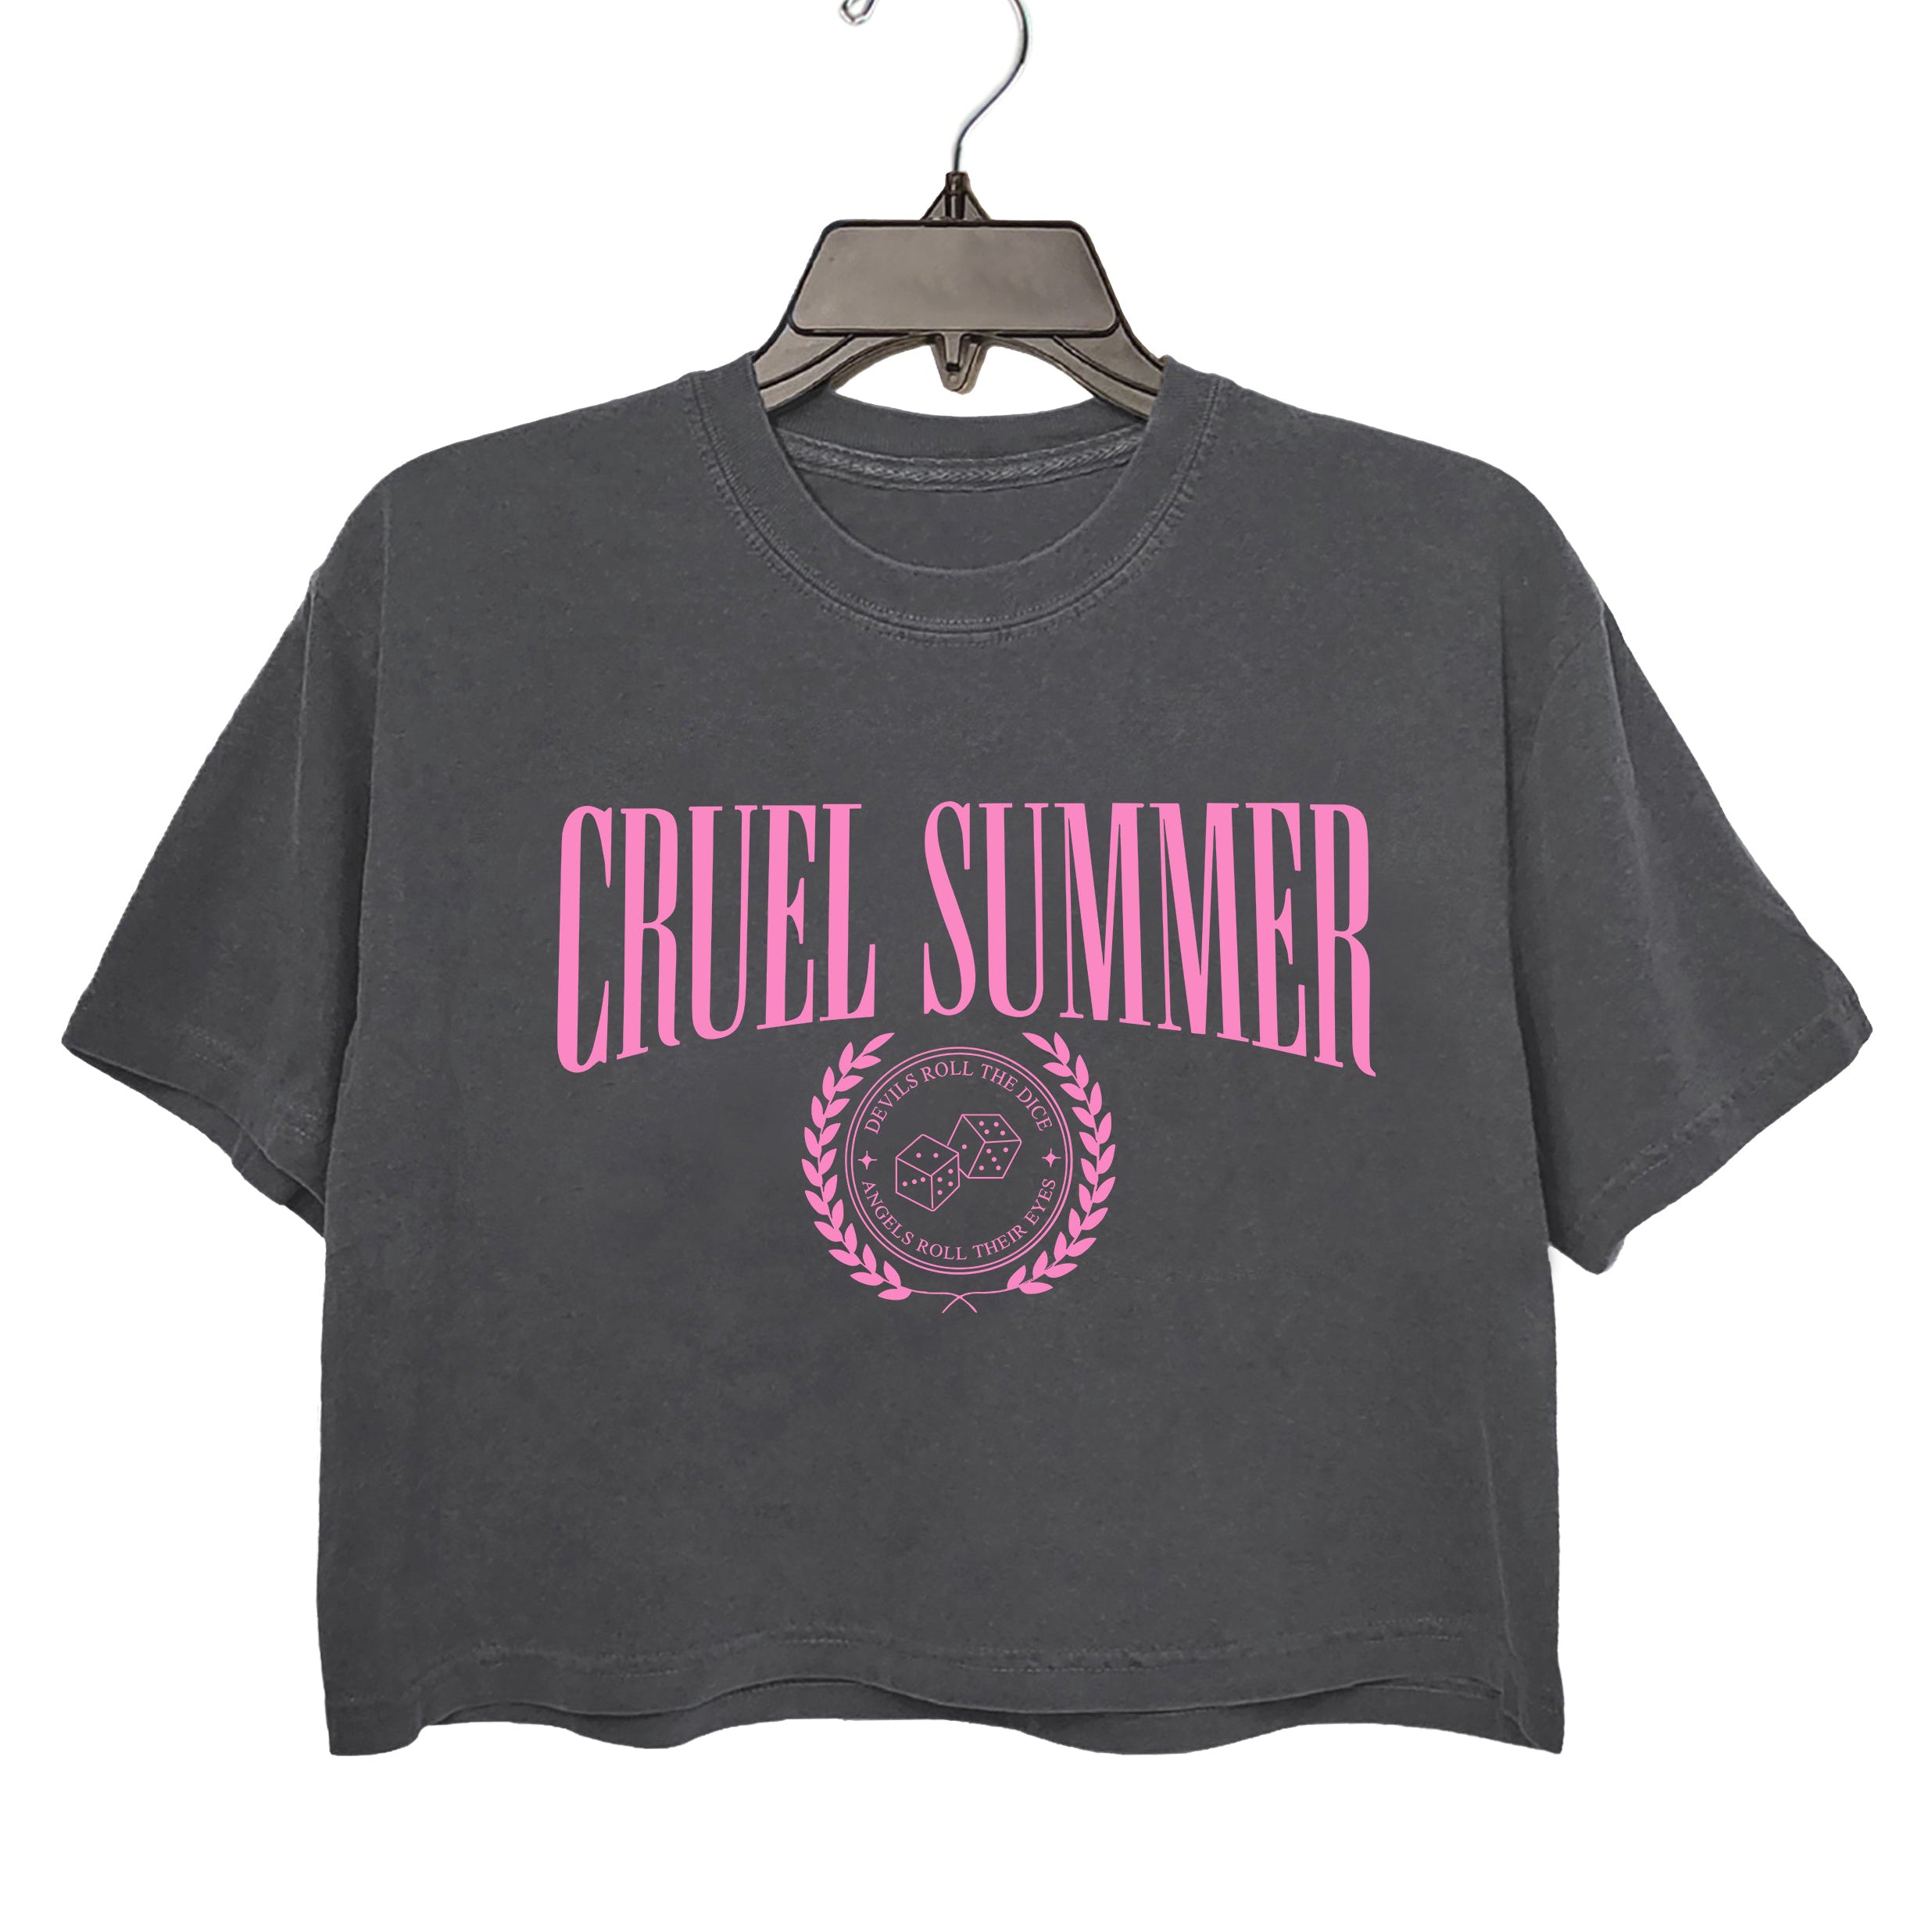 Cruel Summer Crop Top For Women